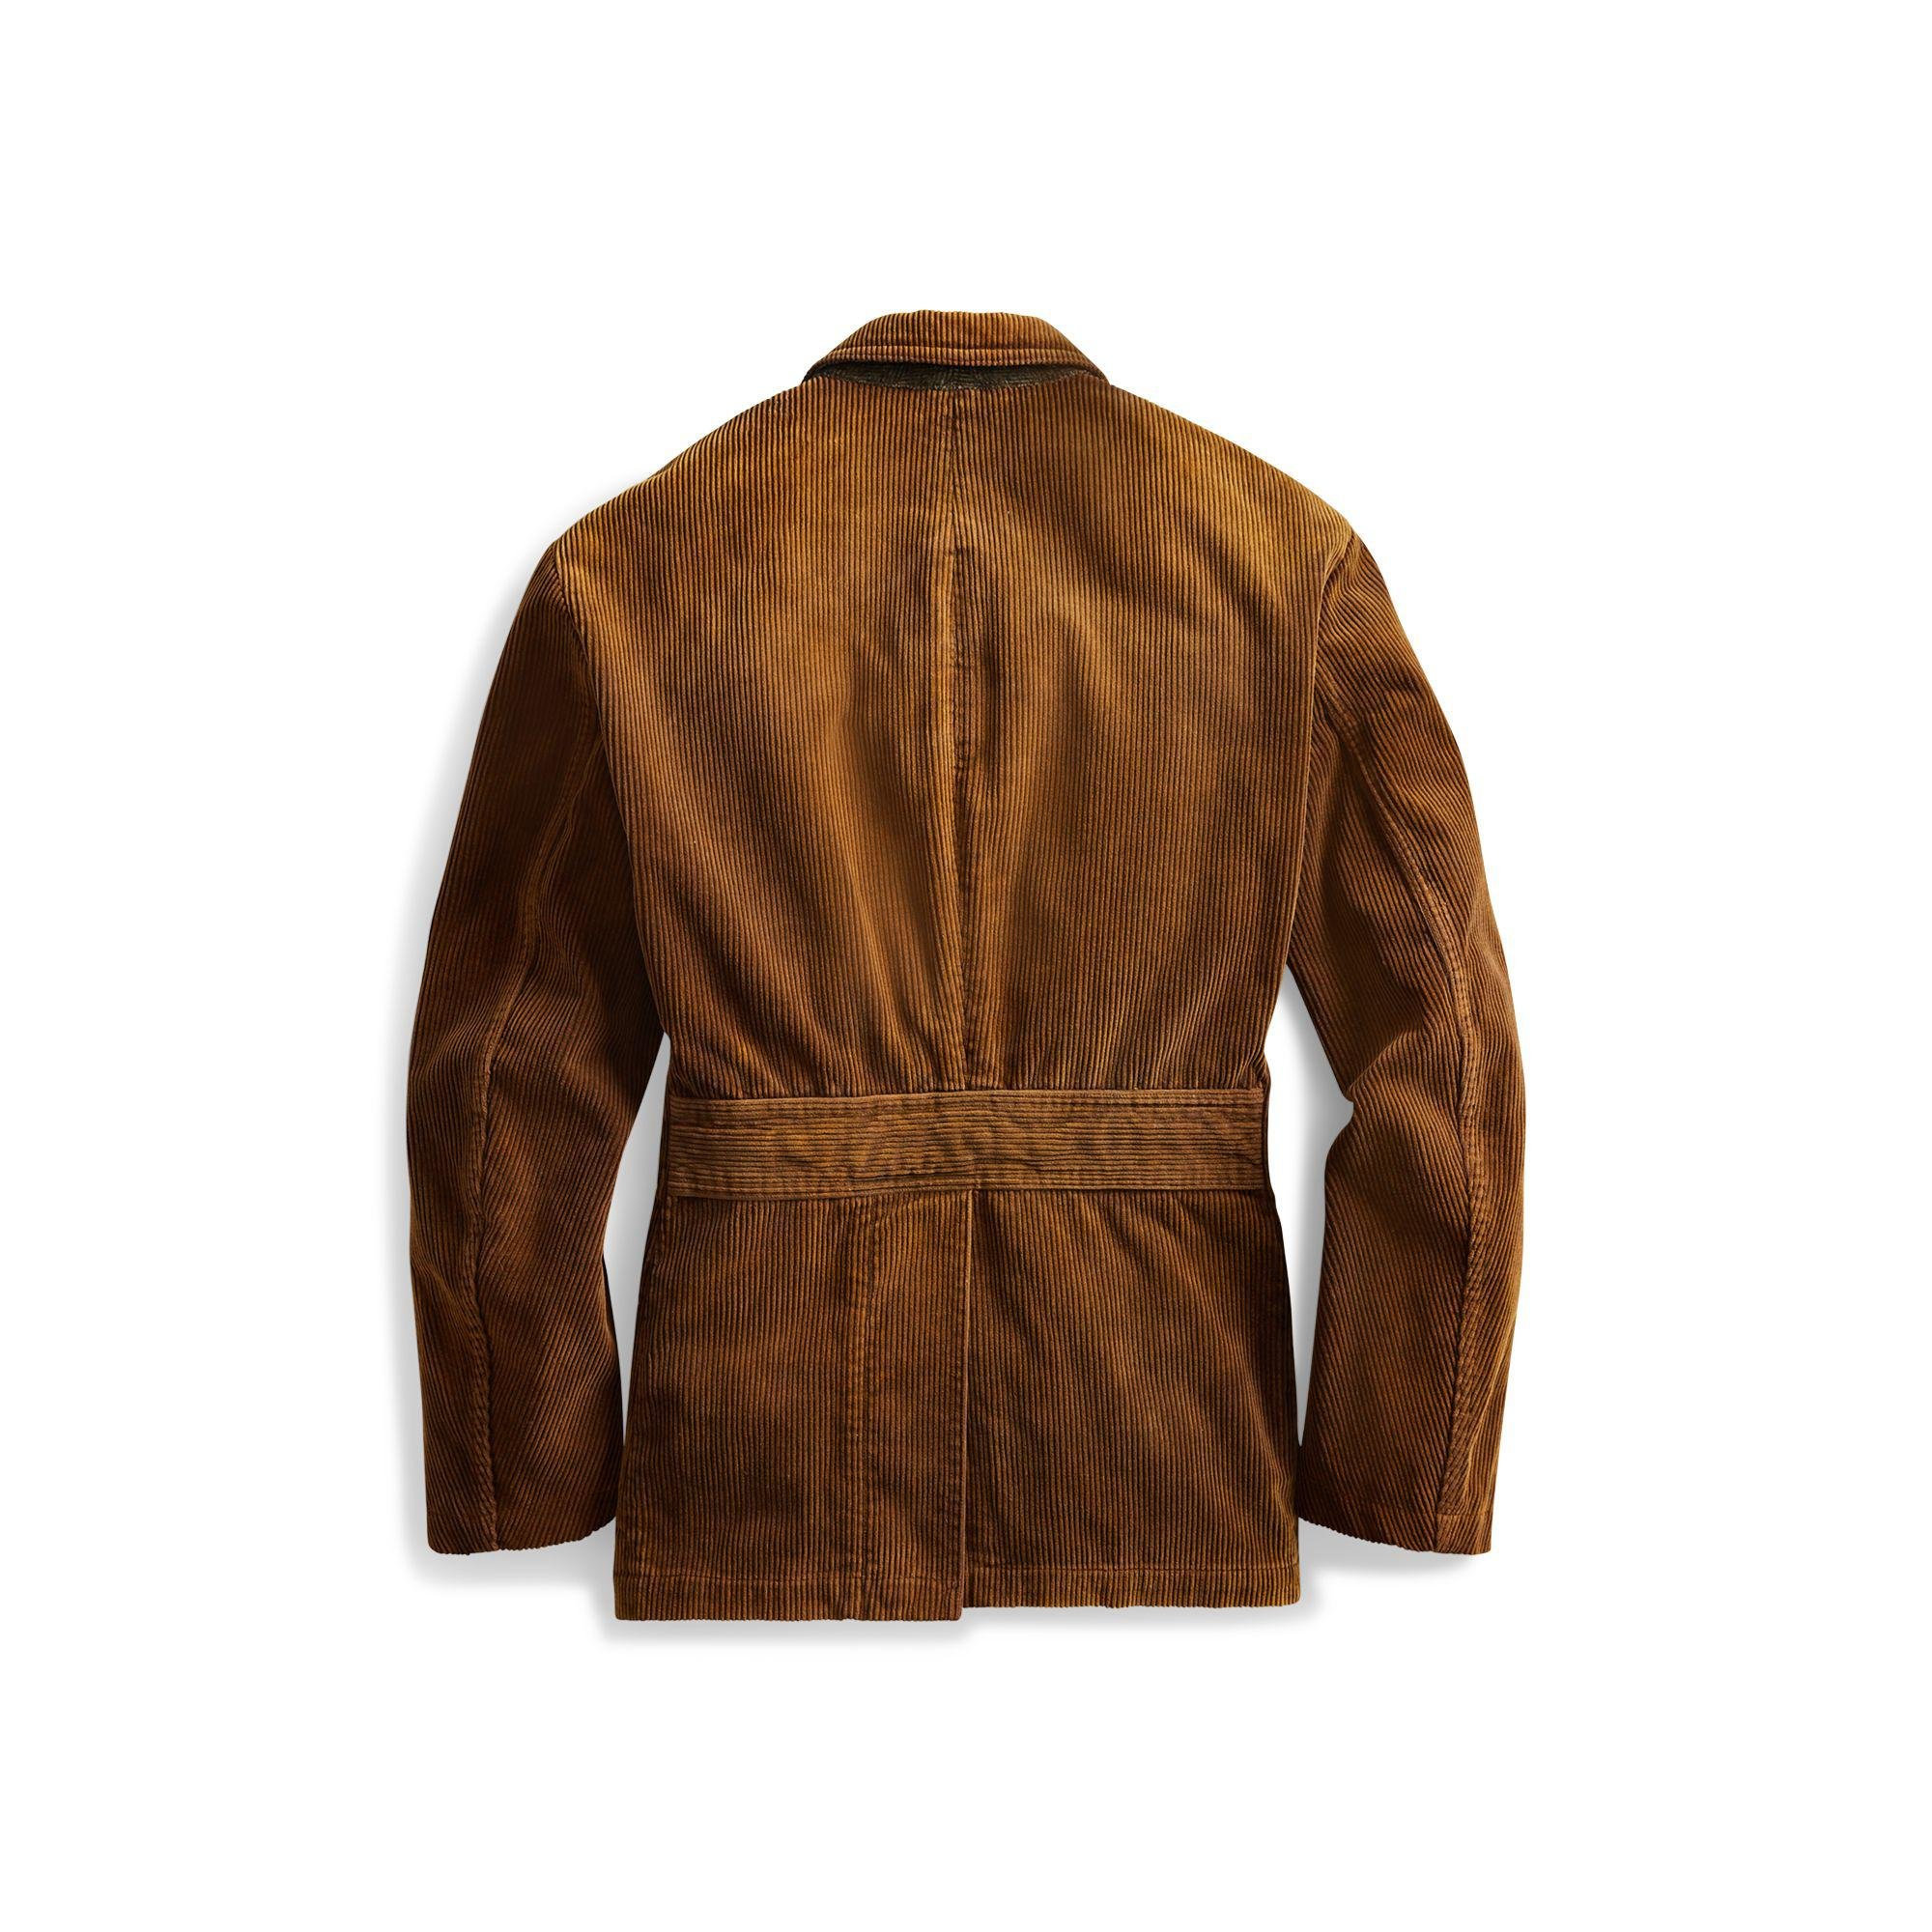 RRL Corduroy Sport Coat in Brown for Men - Lyst